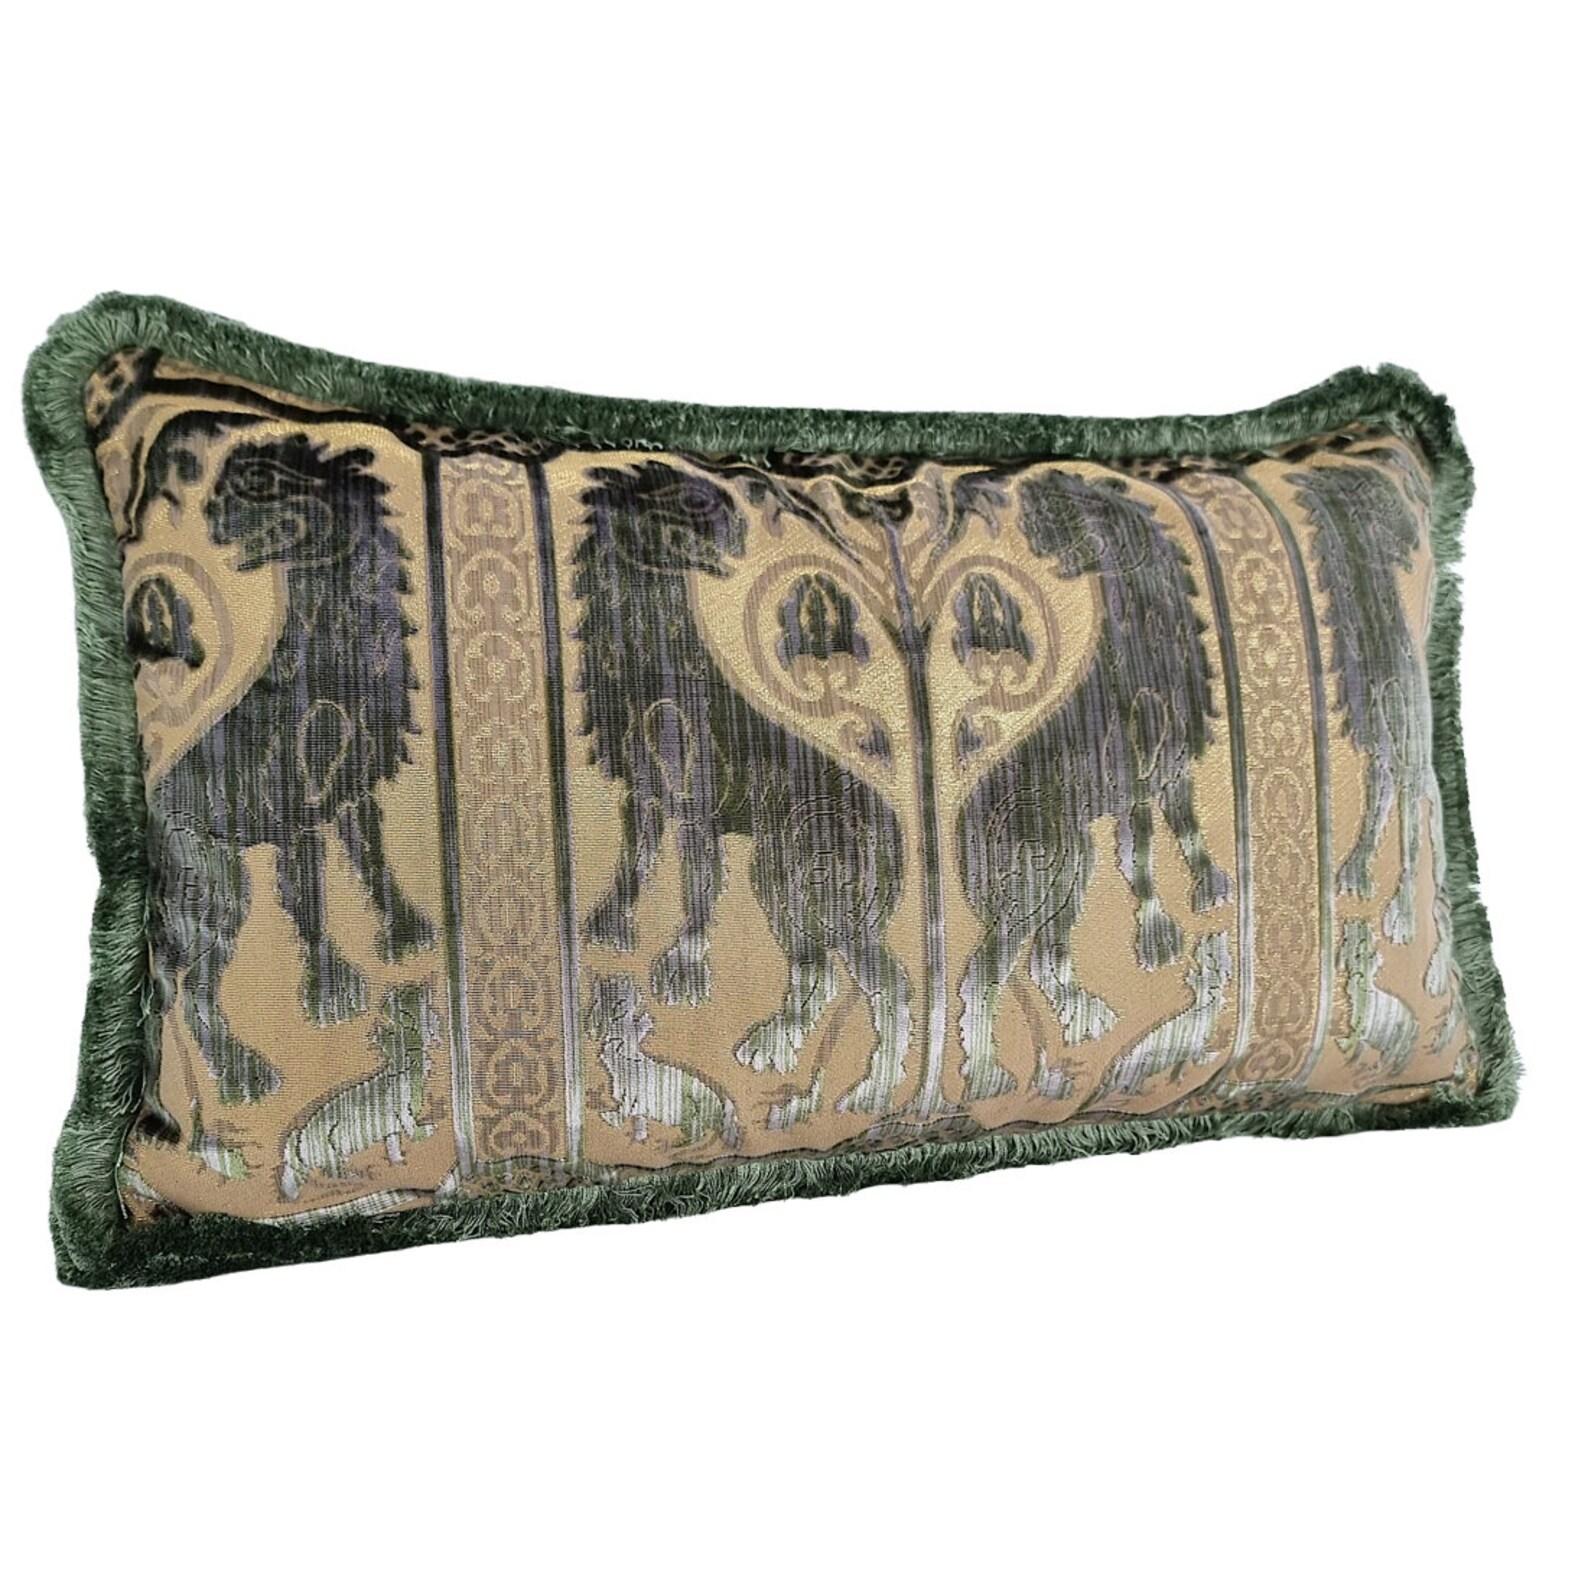 Dieses erstaunliche Lendenkissen ist handgefertigt aus dem ikonischen Leoni Bizantini - Design aus dem XII-XIV Jahrhundert - Seidenhecksamt in olivgrüner Farbe von 'Tessitura Luigi Bevilacqua', dem historischen und angesehenen Textilunternehmen aus